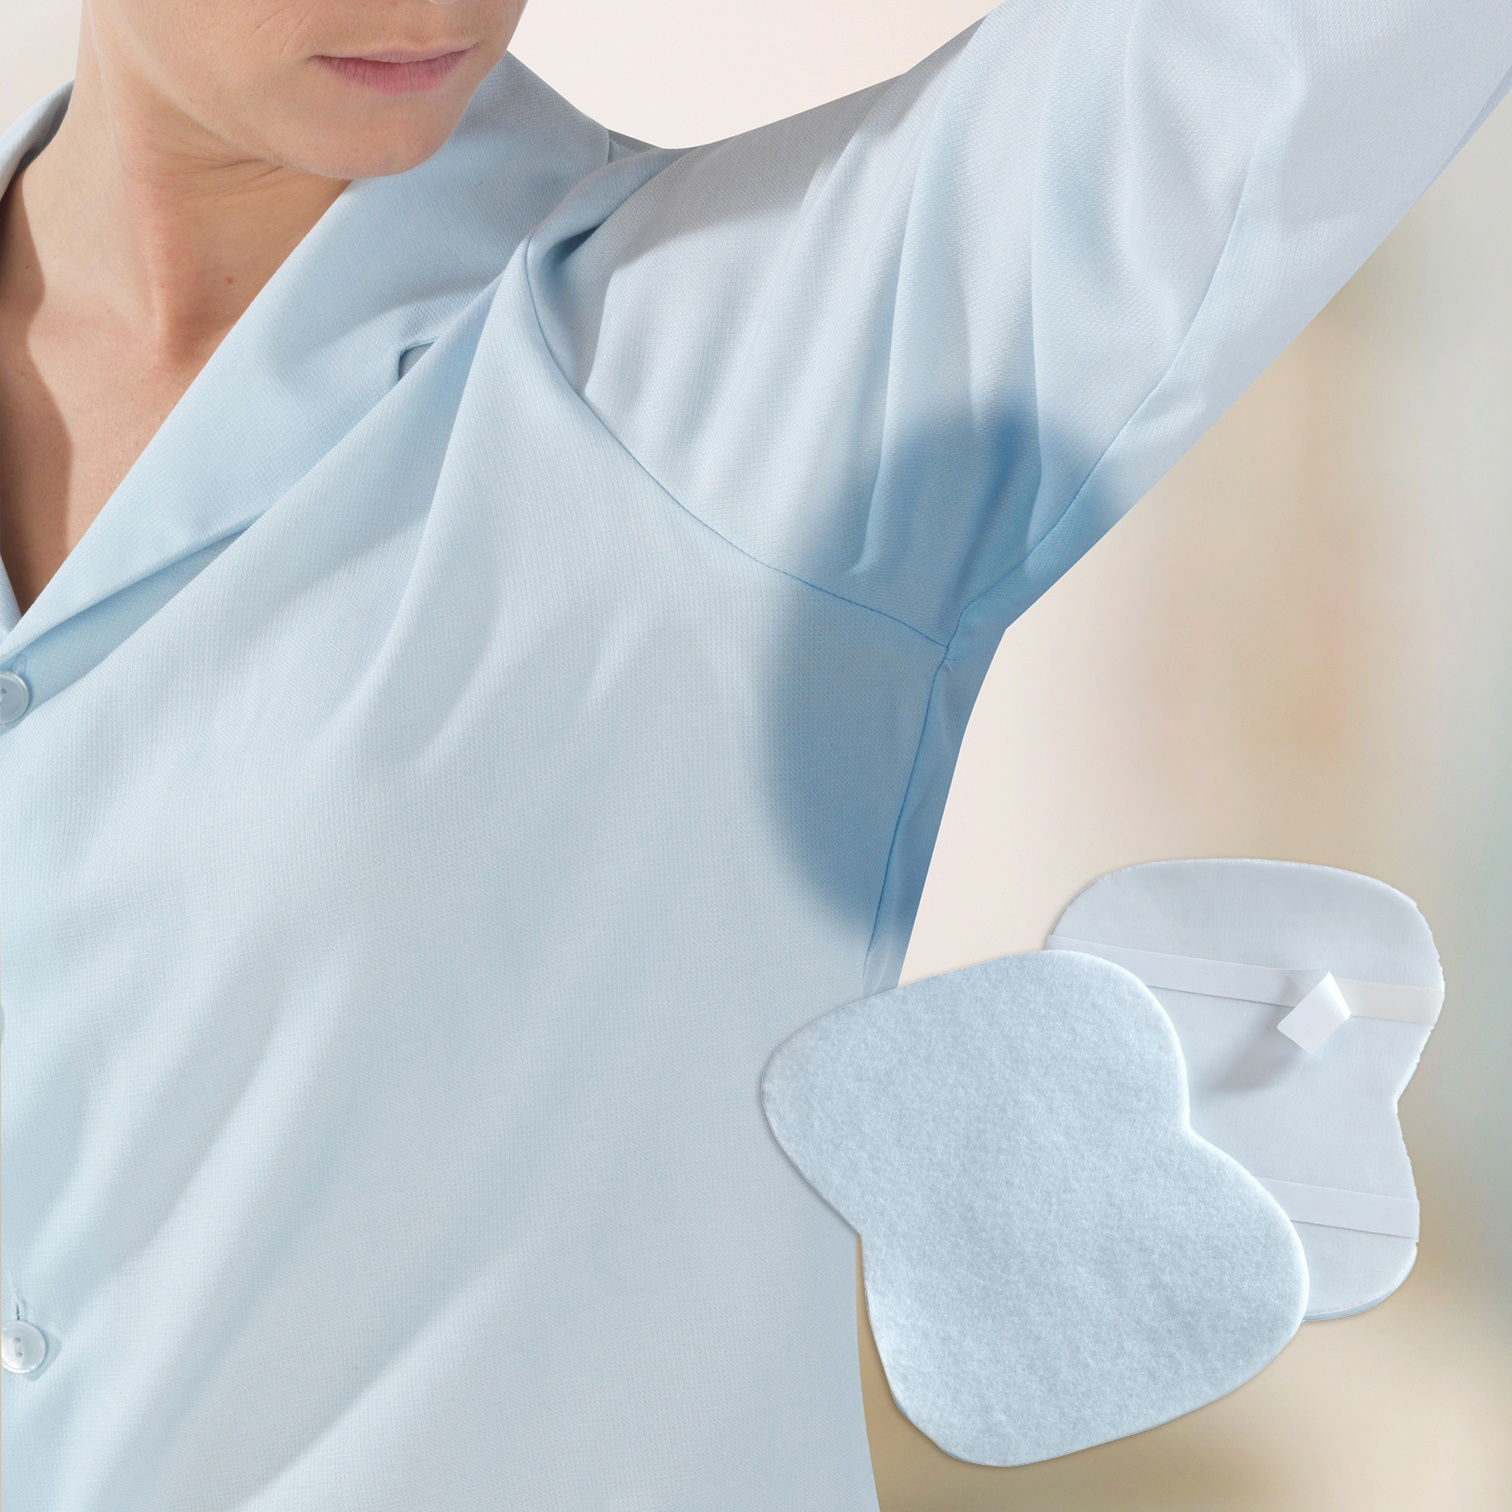 48 coussinets anti-transpiration pour les aisselles ⋆ Lehner Versand